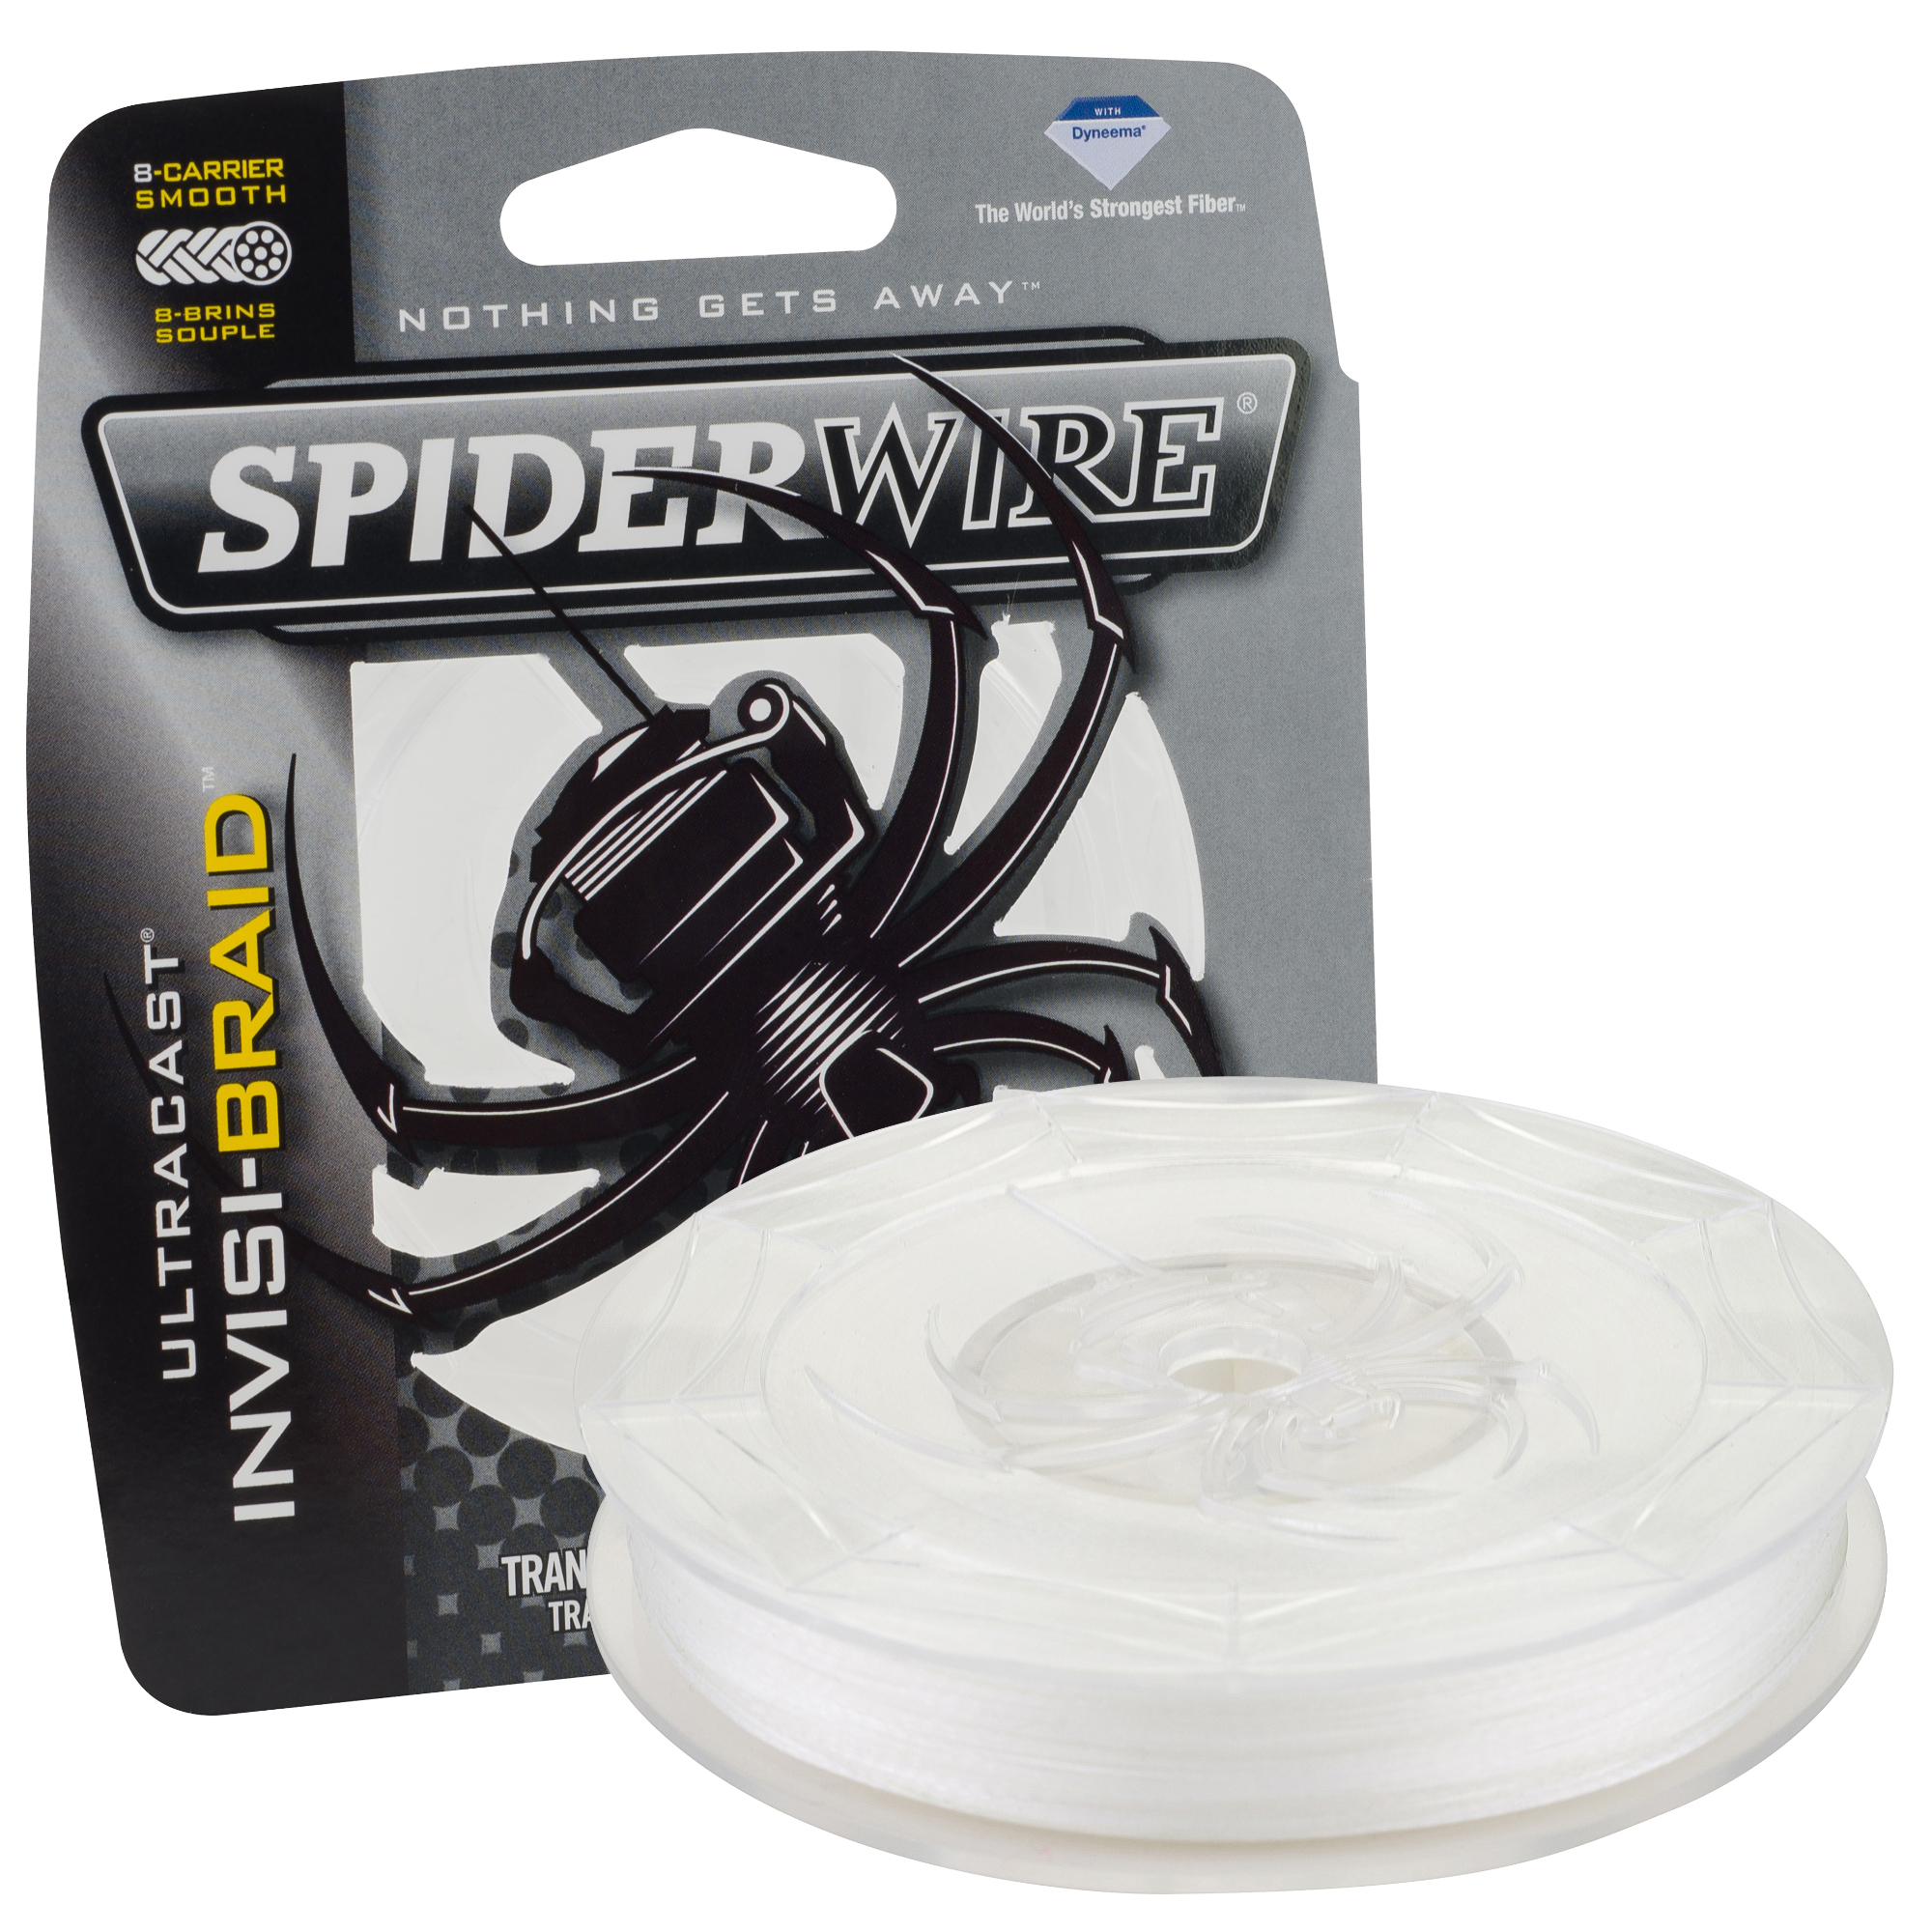 Spiderwire Ultracast Invisibraid Fishing Line 20 lb. Translucent